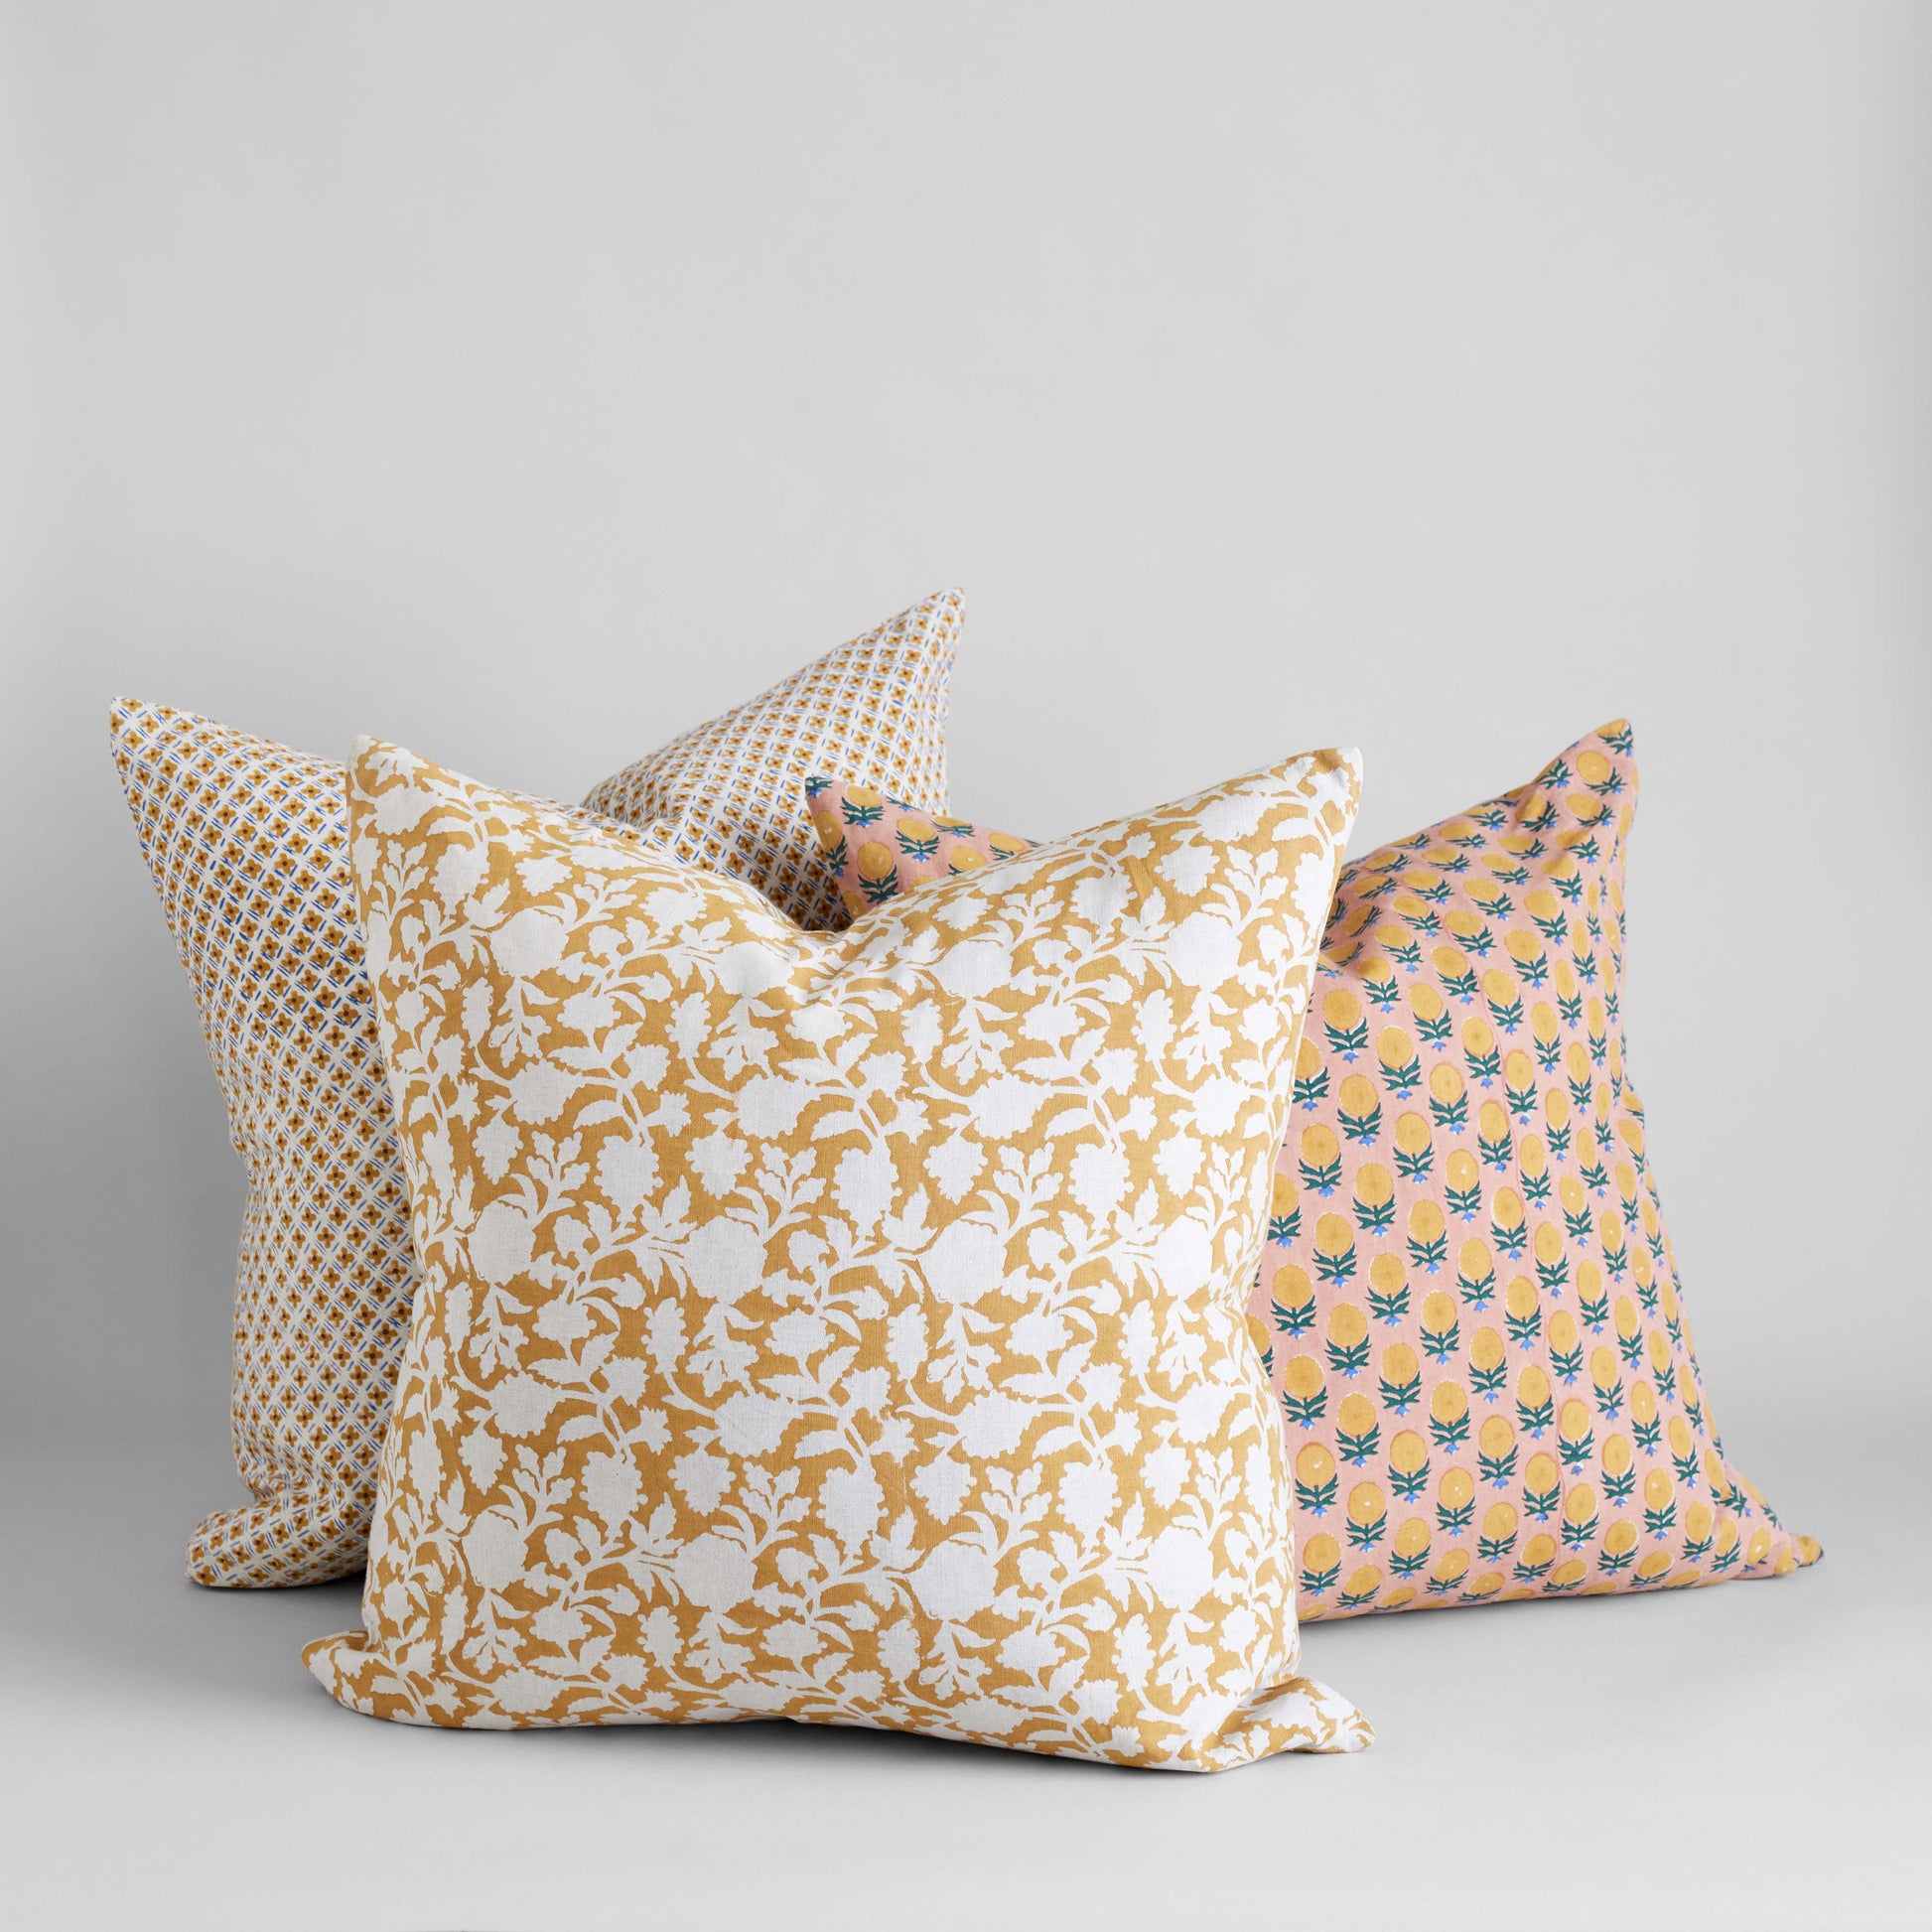 Bloomist Pillows Jodha Hand Block Printed Linen Pillow Cover, 22x22